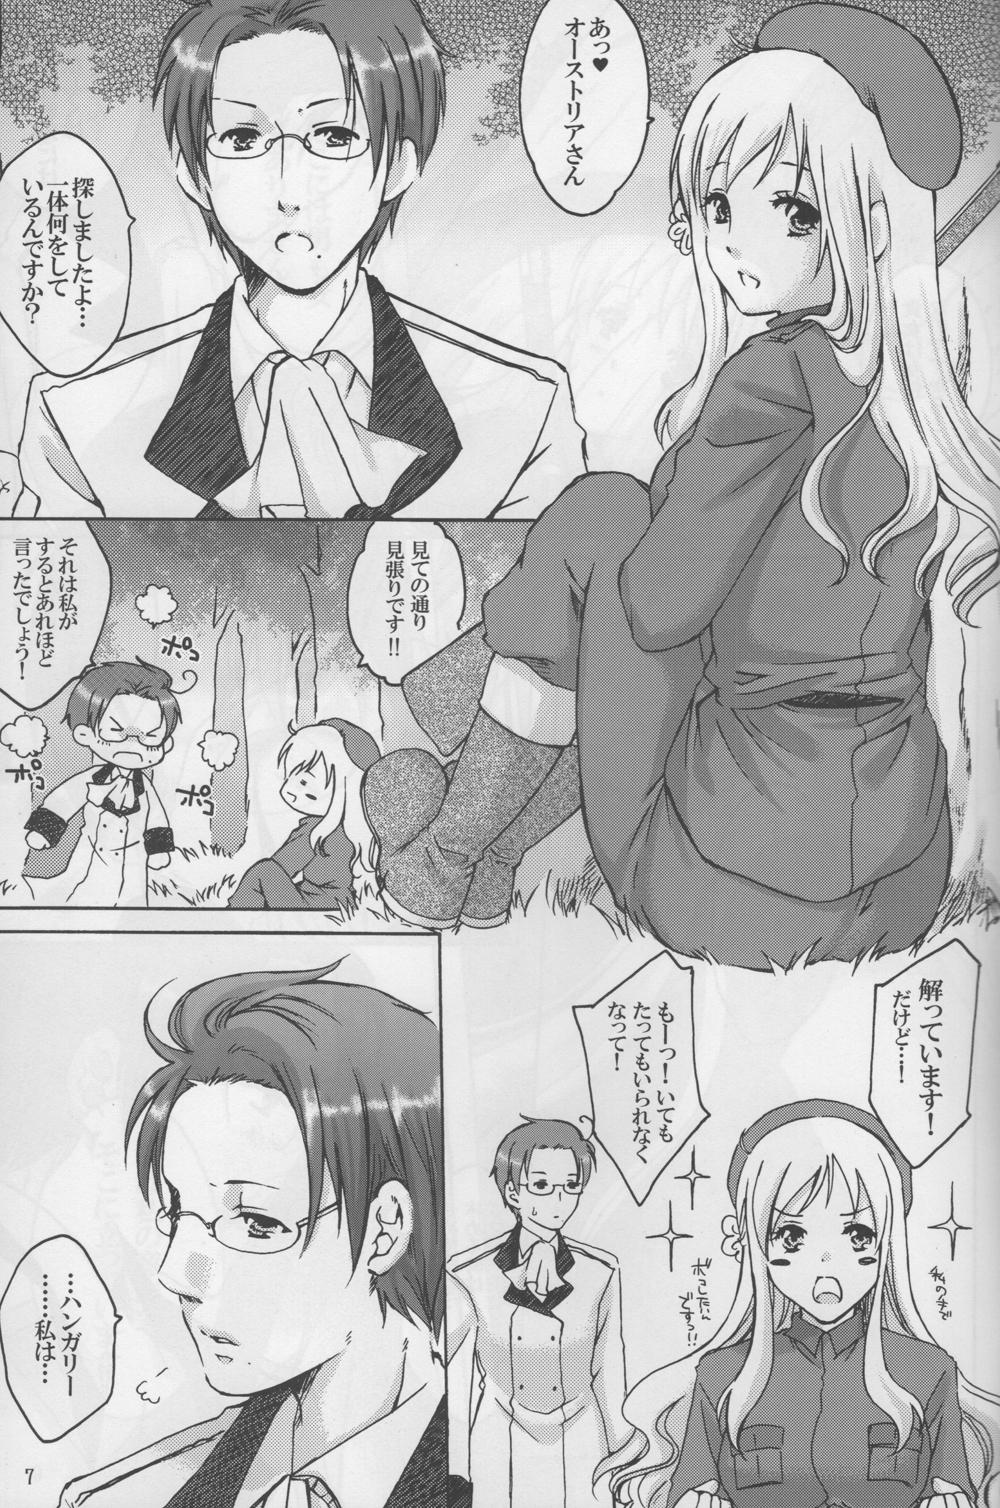 Athletic Rin to Shite Saku Hana no Gotoku - Axis powers hetalia Lolicon - Page 7